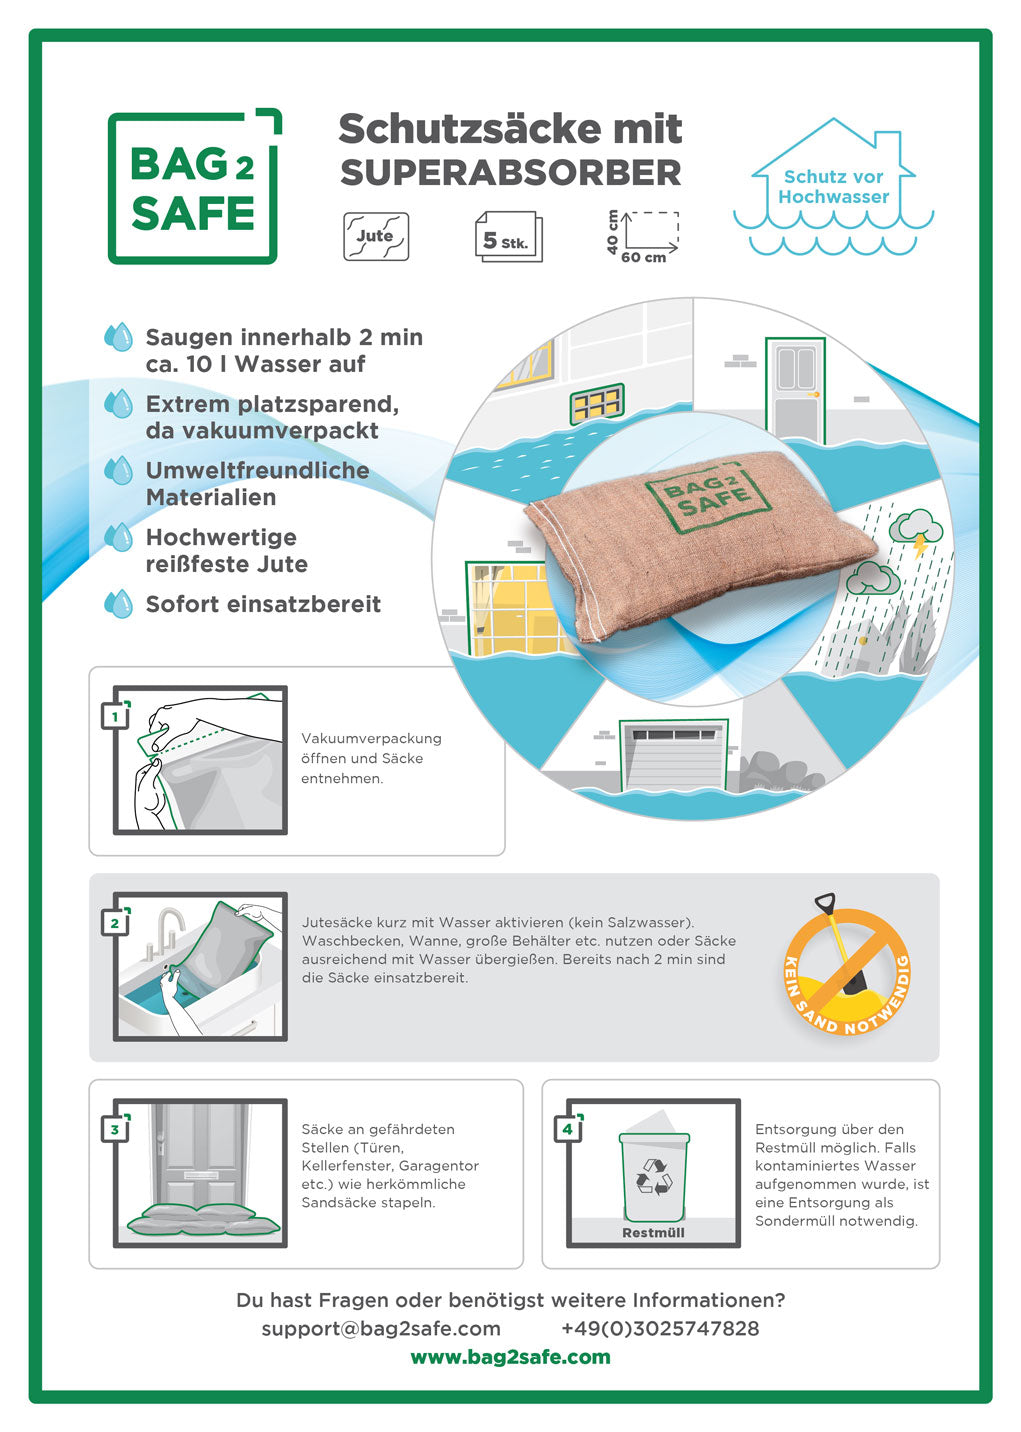 Etikett der Verpackung der BAG 2 SAFE Jutesäcke mit Superabsorber